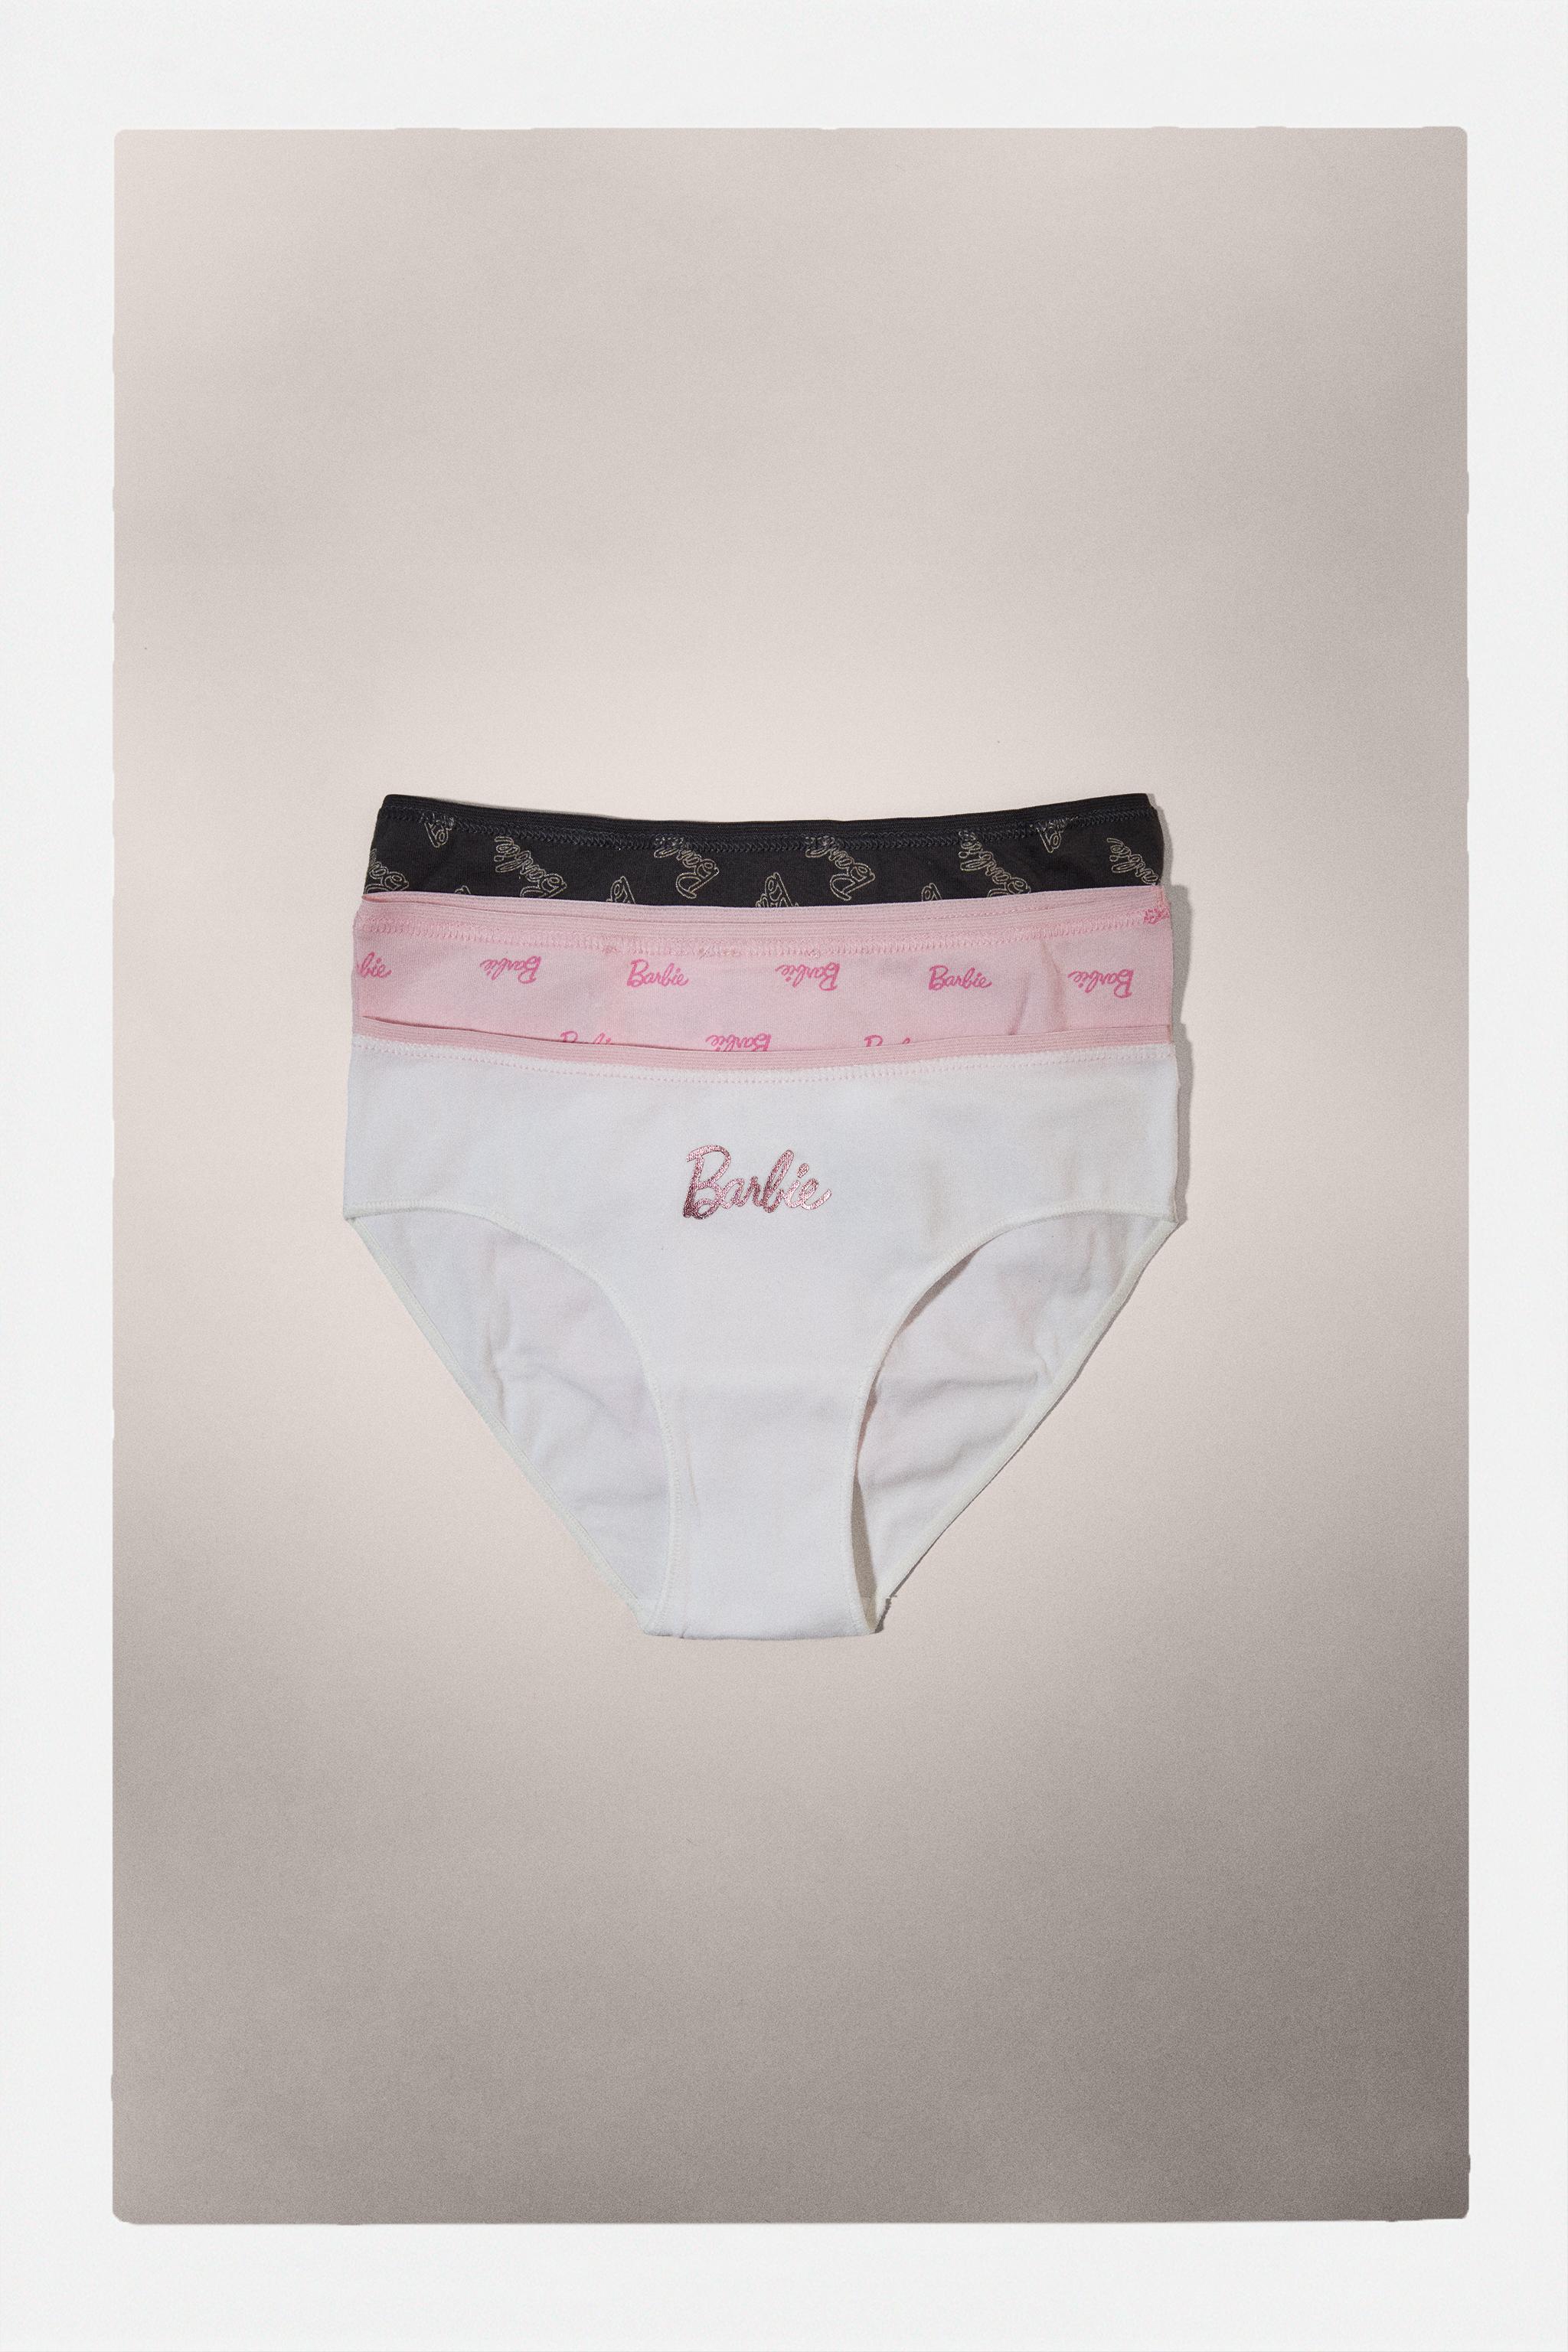 Girls' Barbie 4pk Underwear - 4